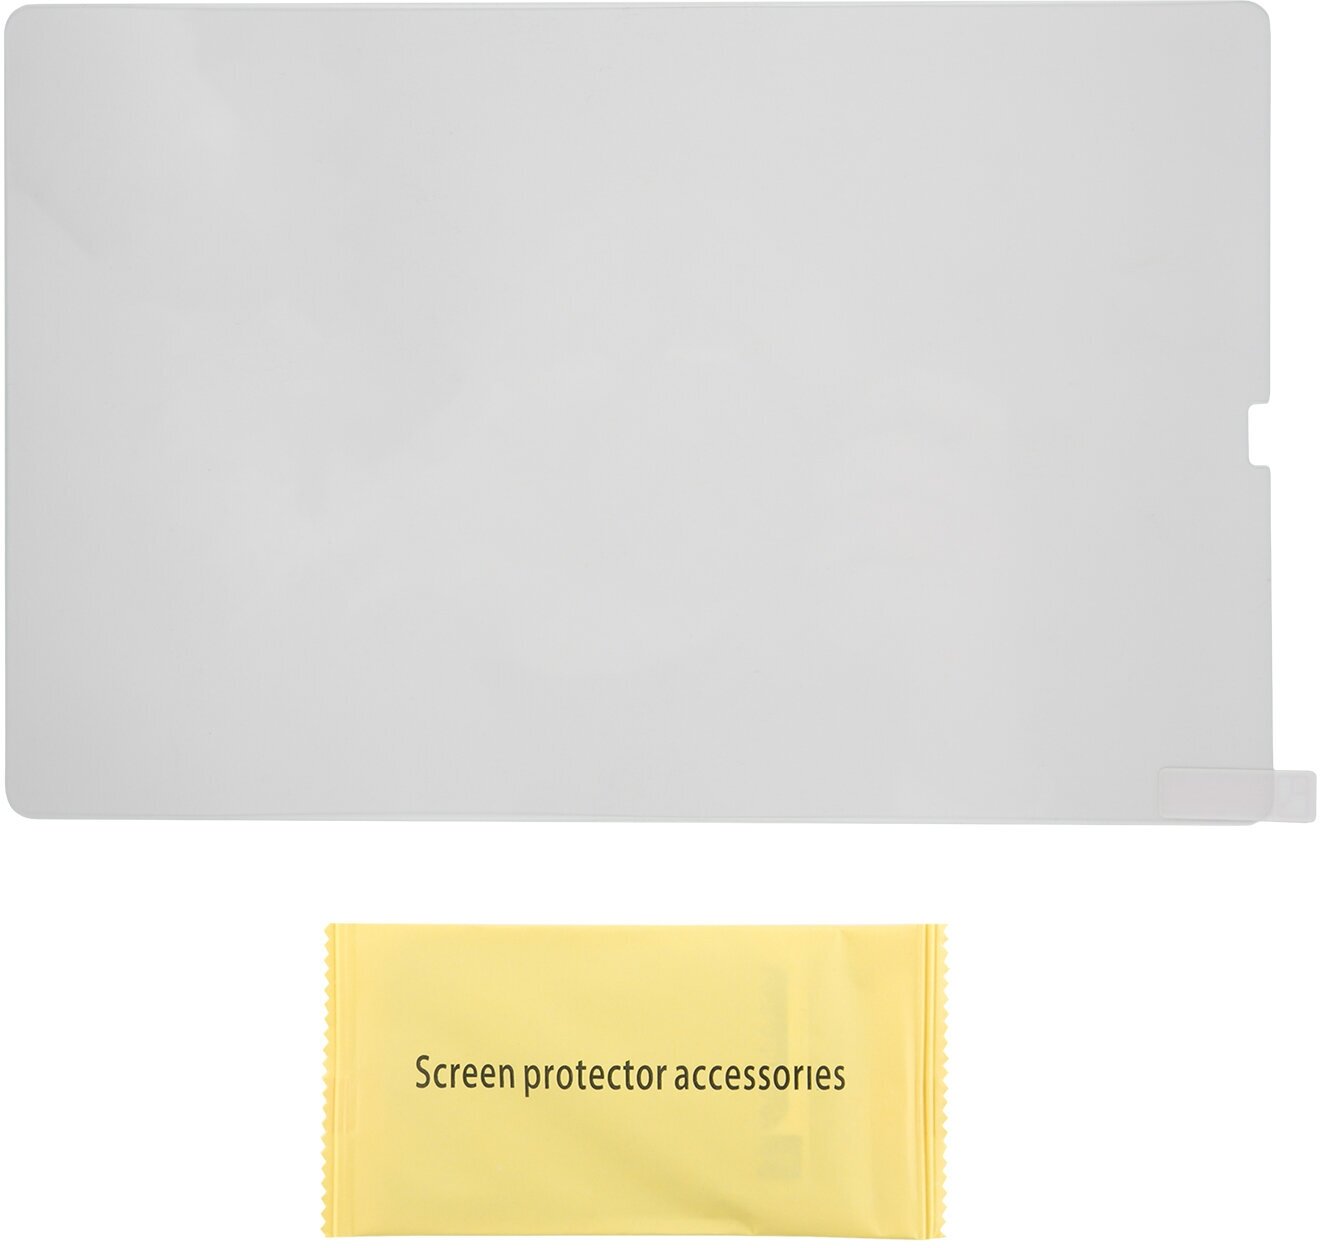 Защитное стекло на планшет Samsung Tab S5e tempered glass/Защита от царапин на Самсунг Таб С5е/Олеофобное покрытие/Без пузырей/Экран накладка